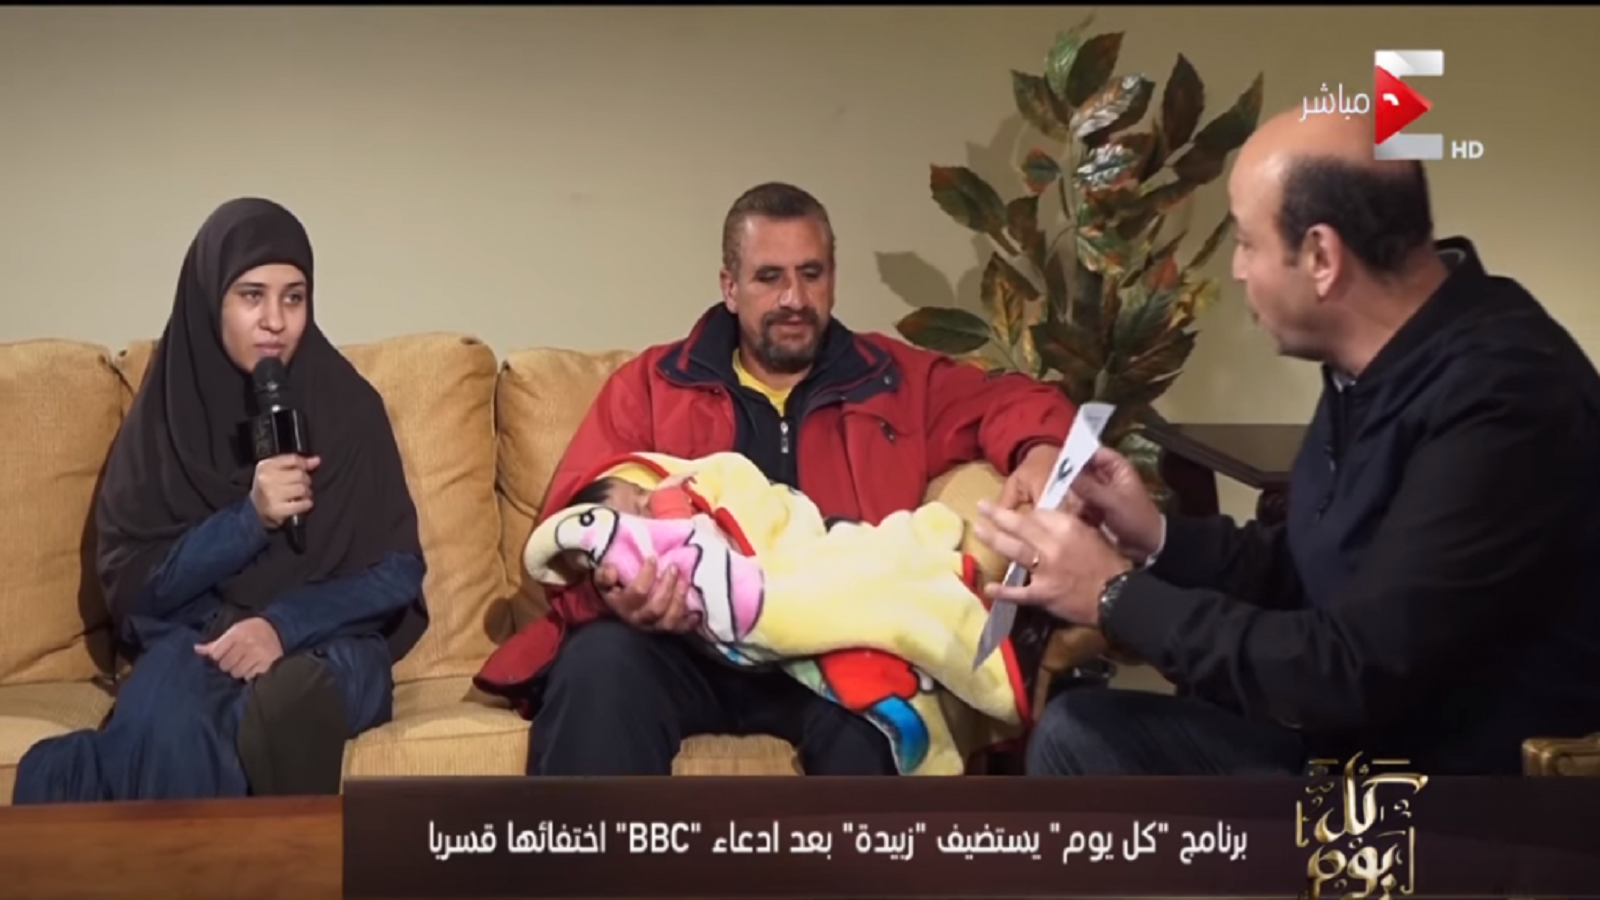 مصر: تصعيد ضدّ "بي بي سي" ودعوة رئاسية لمقاطعتها